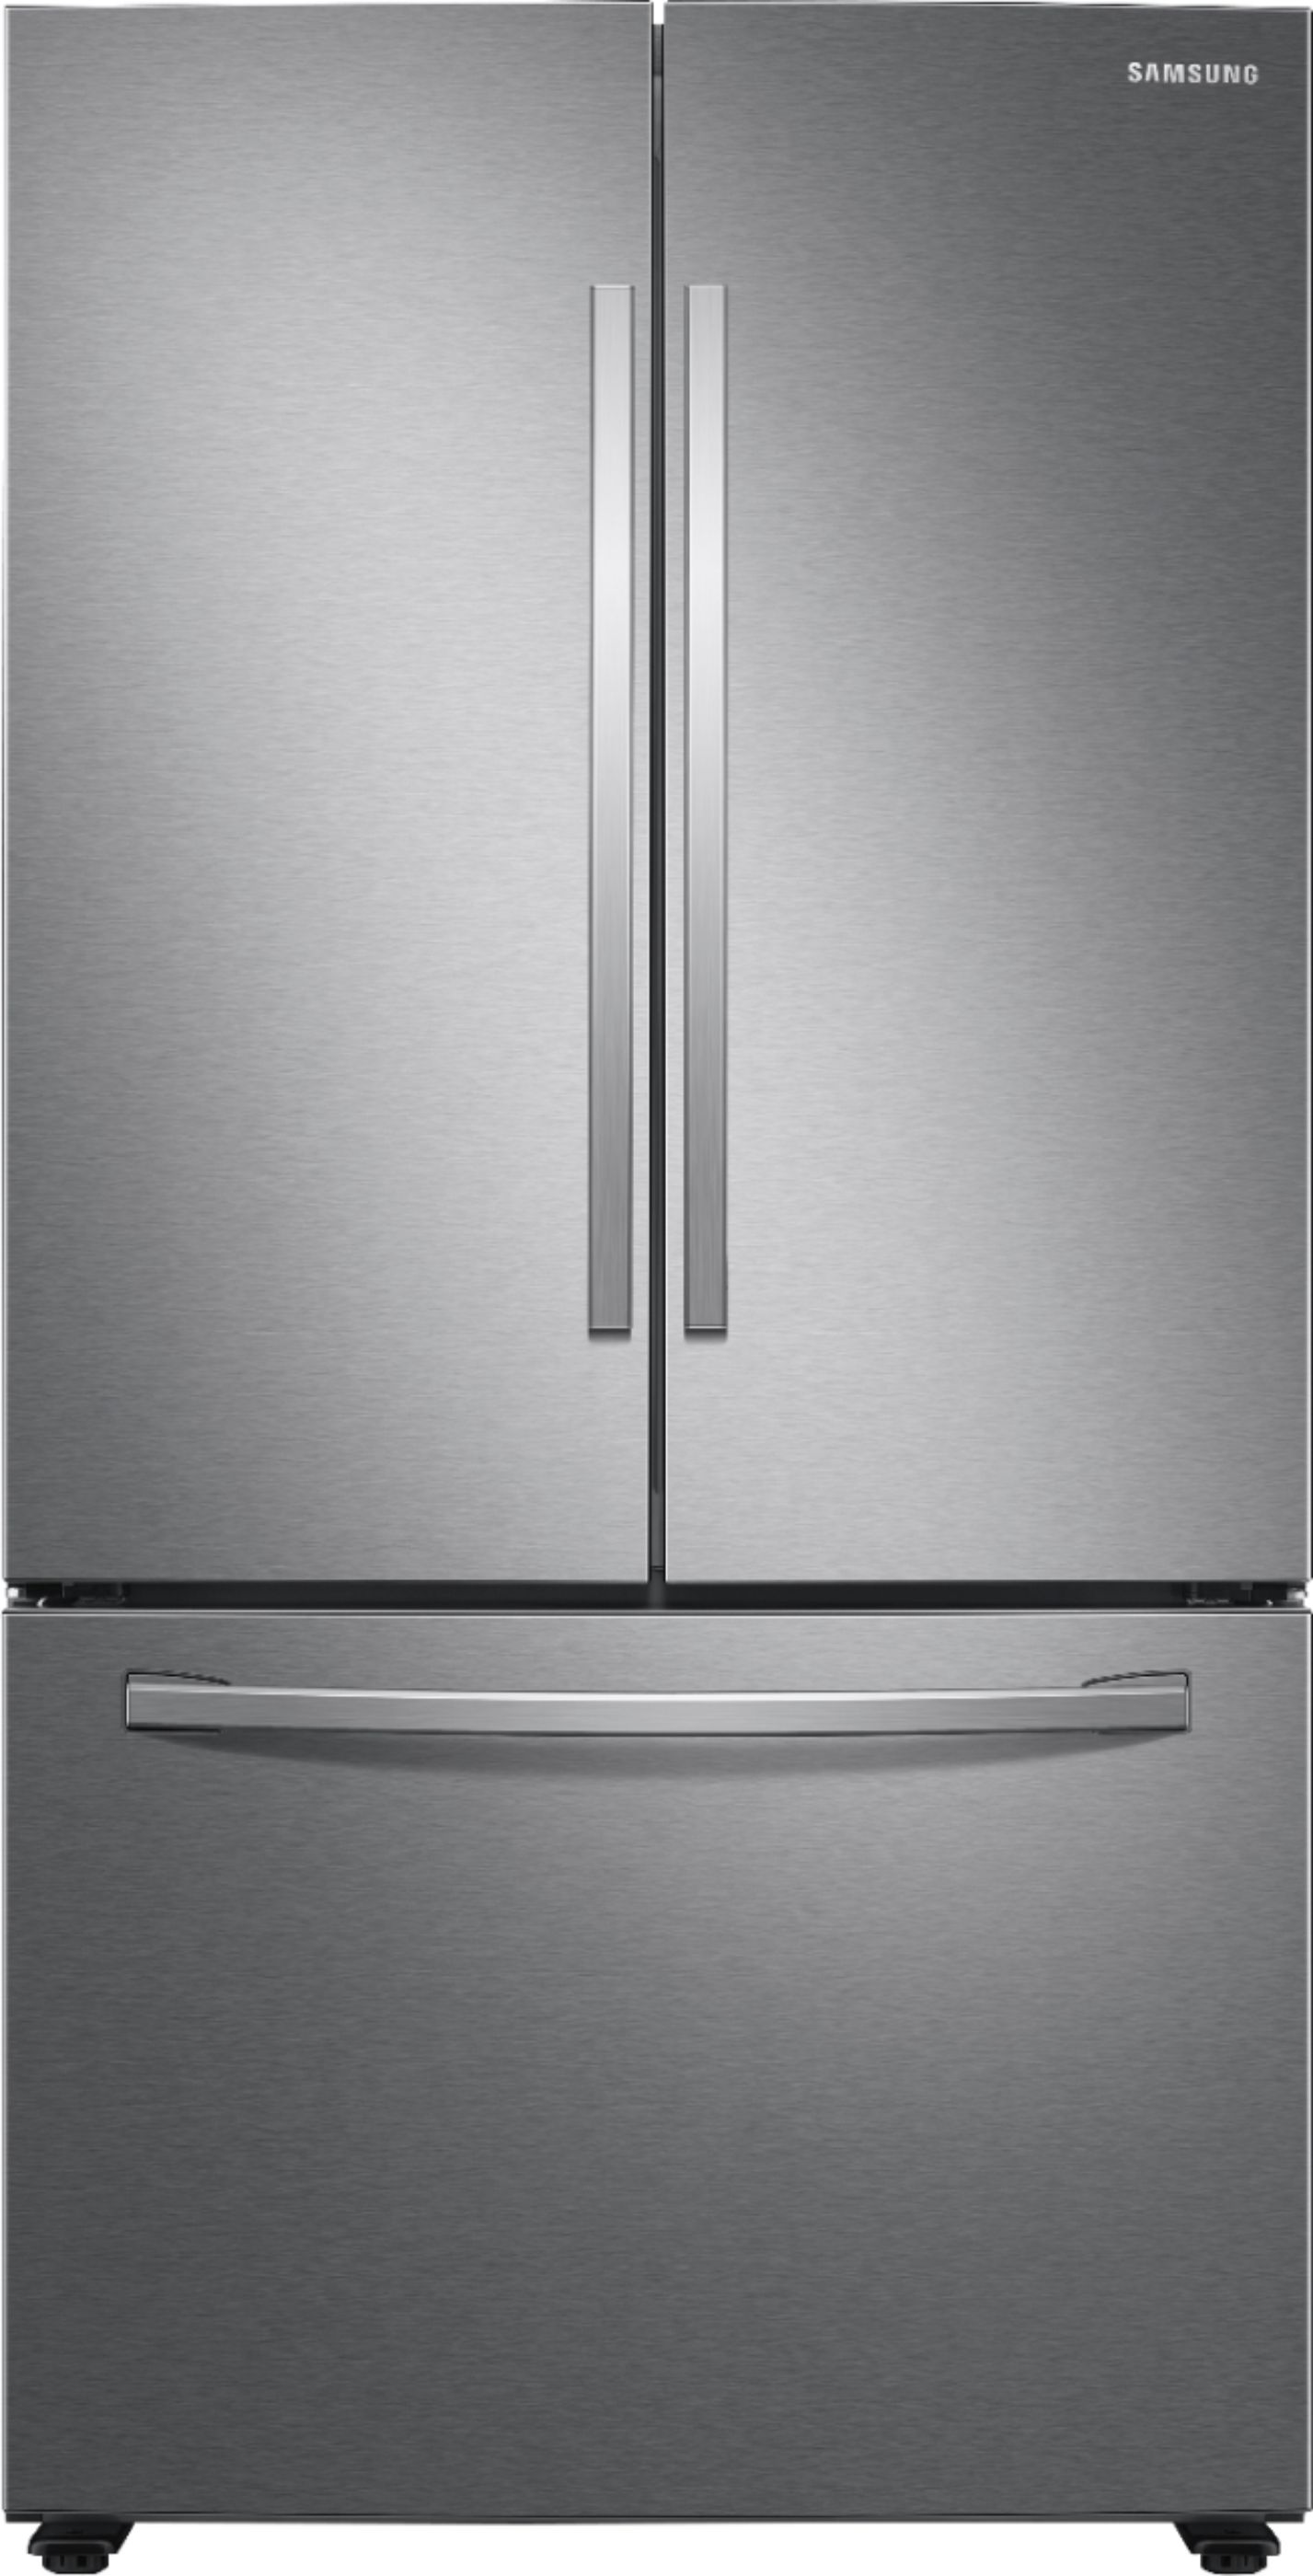 Samsung 28 Cu Ft Large Capacity 3 Door French Door Refrigerator Stainless Steel Rf28t5001sr Best Buy